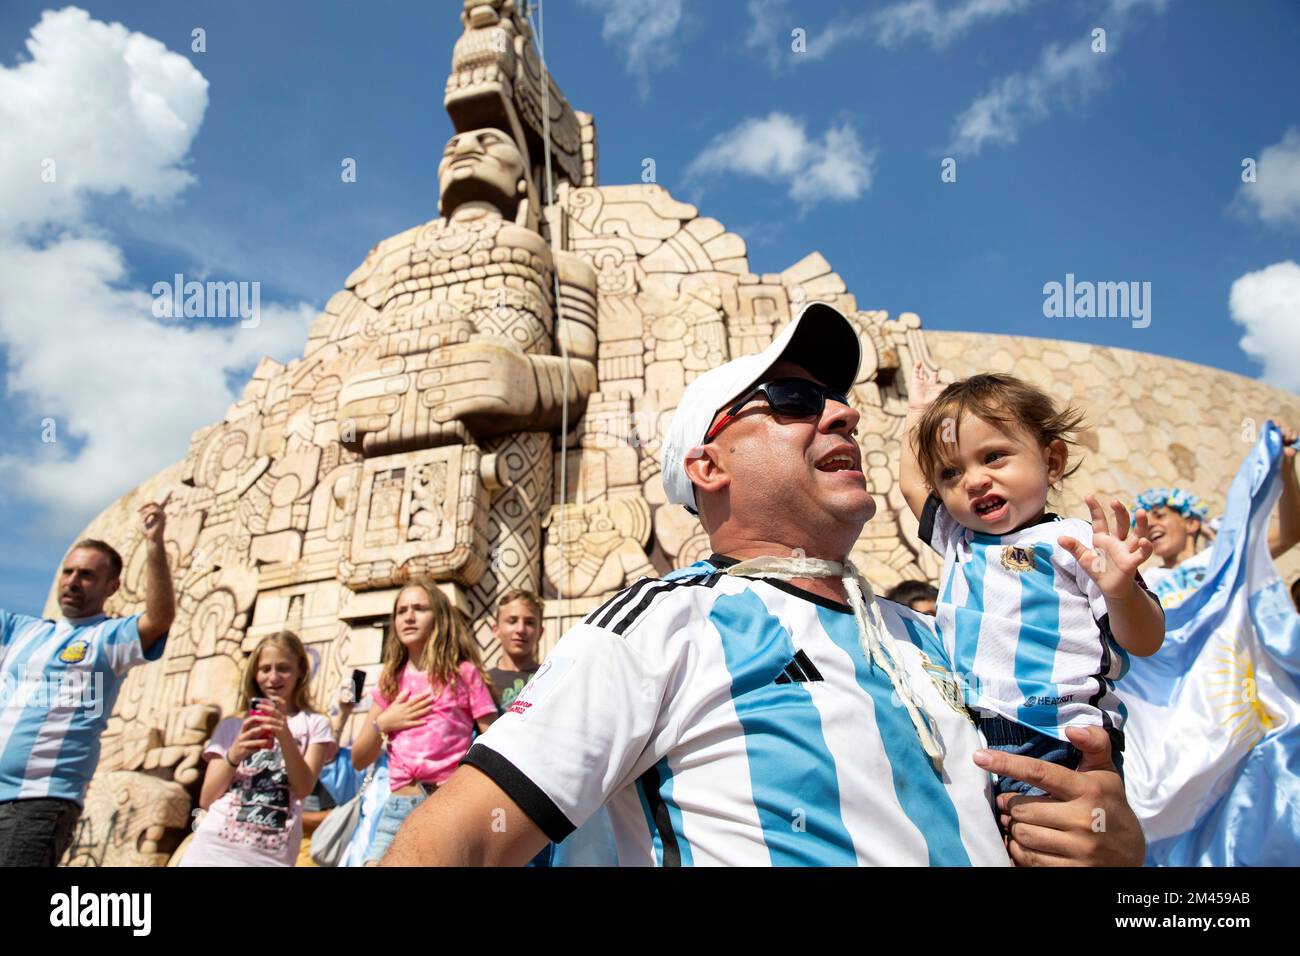 Les fans de football argentins célèbrent la victoire de leurs équipes en coupe du monde sur la France au Monument de la Patrie (Monumento a la Patria) à Merida, Yucatan, Mexique sur 18 décembre 2022. Photographie de Bénédicte Desrus Banque D'Images